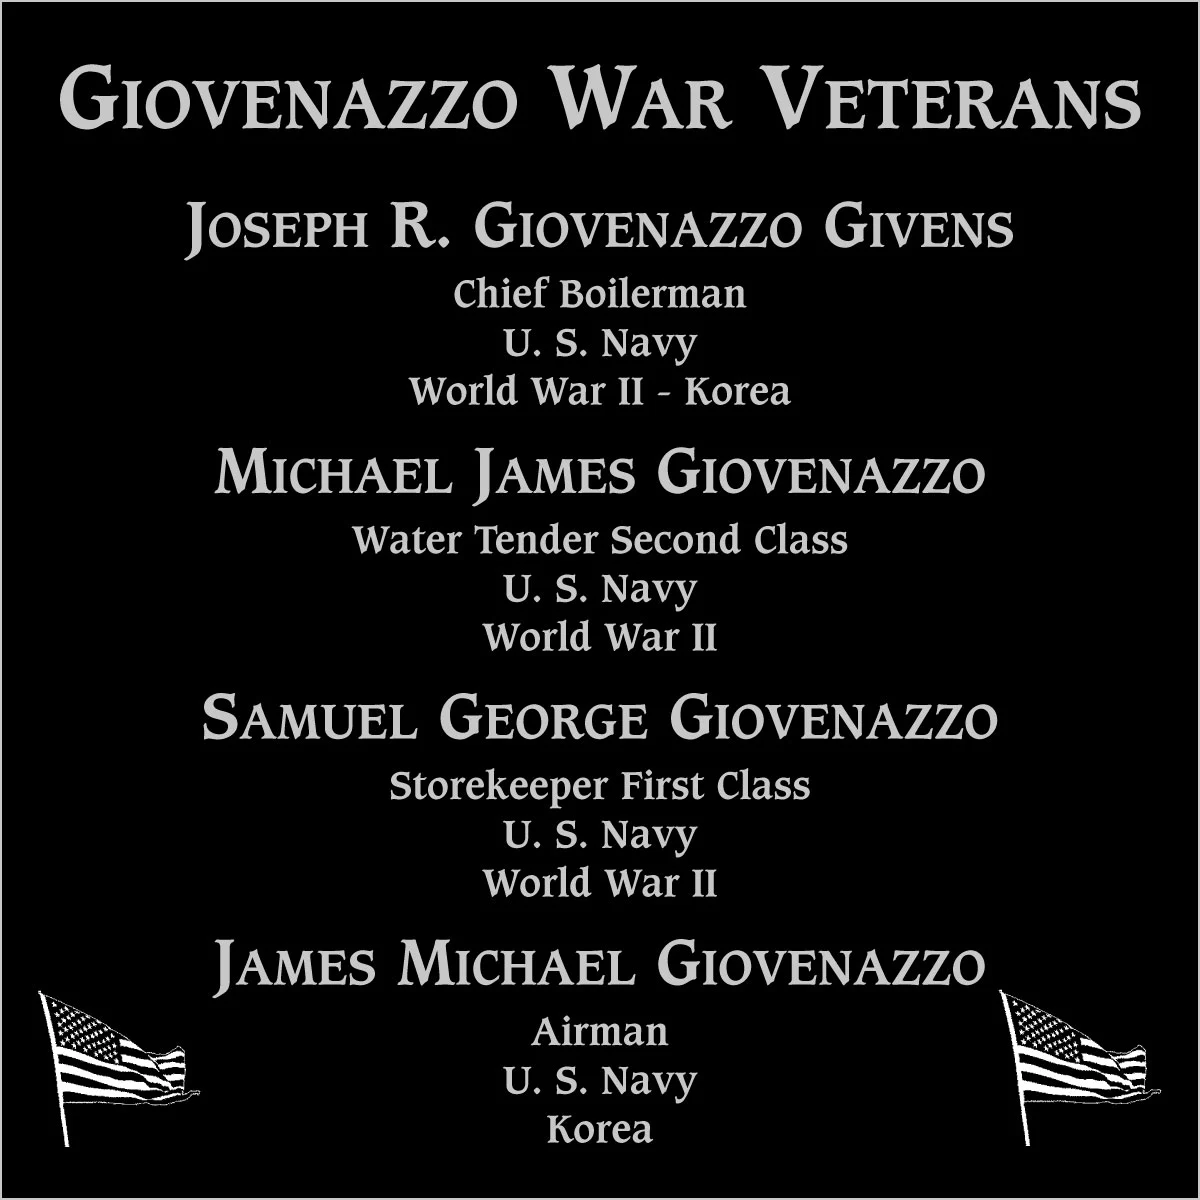 Joseph R. Giovenazzo Givens